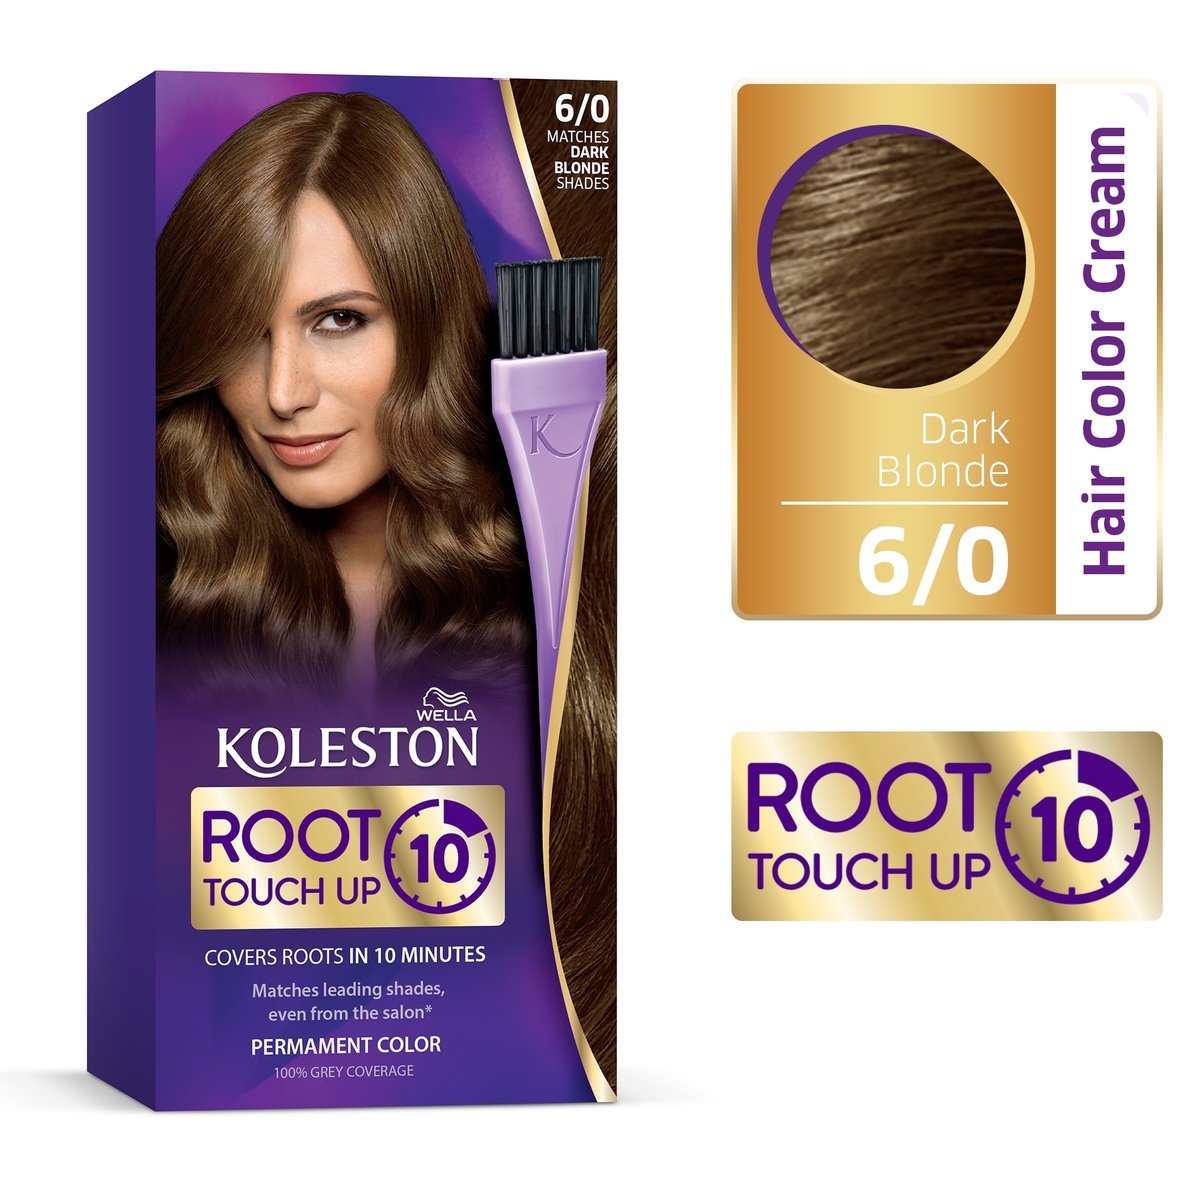 Koleston Root Touch Up 6/0 Dark Blonde 1 pkt